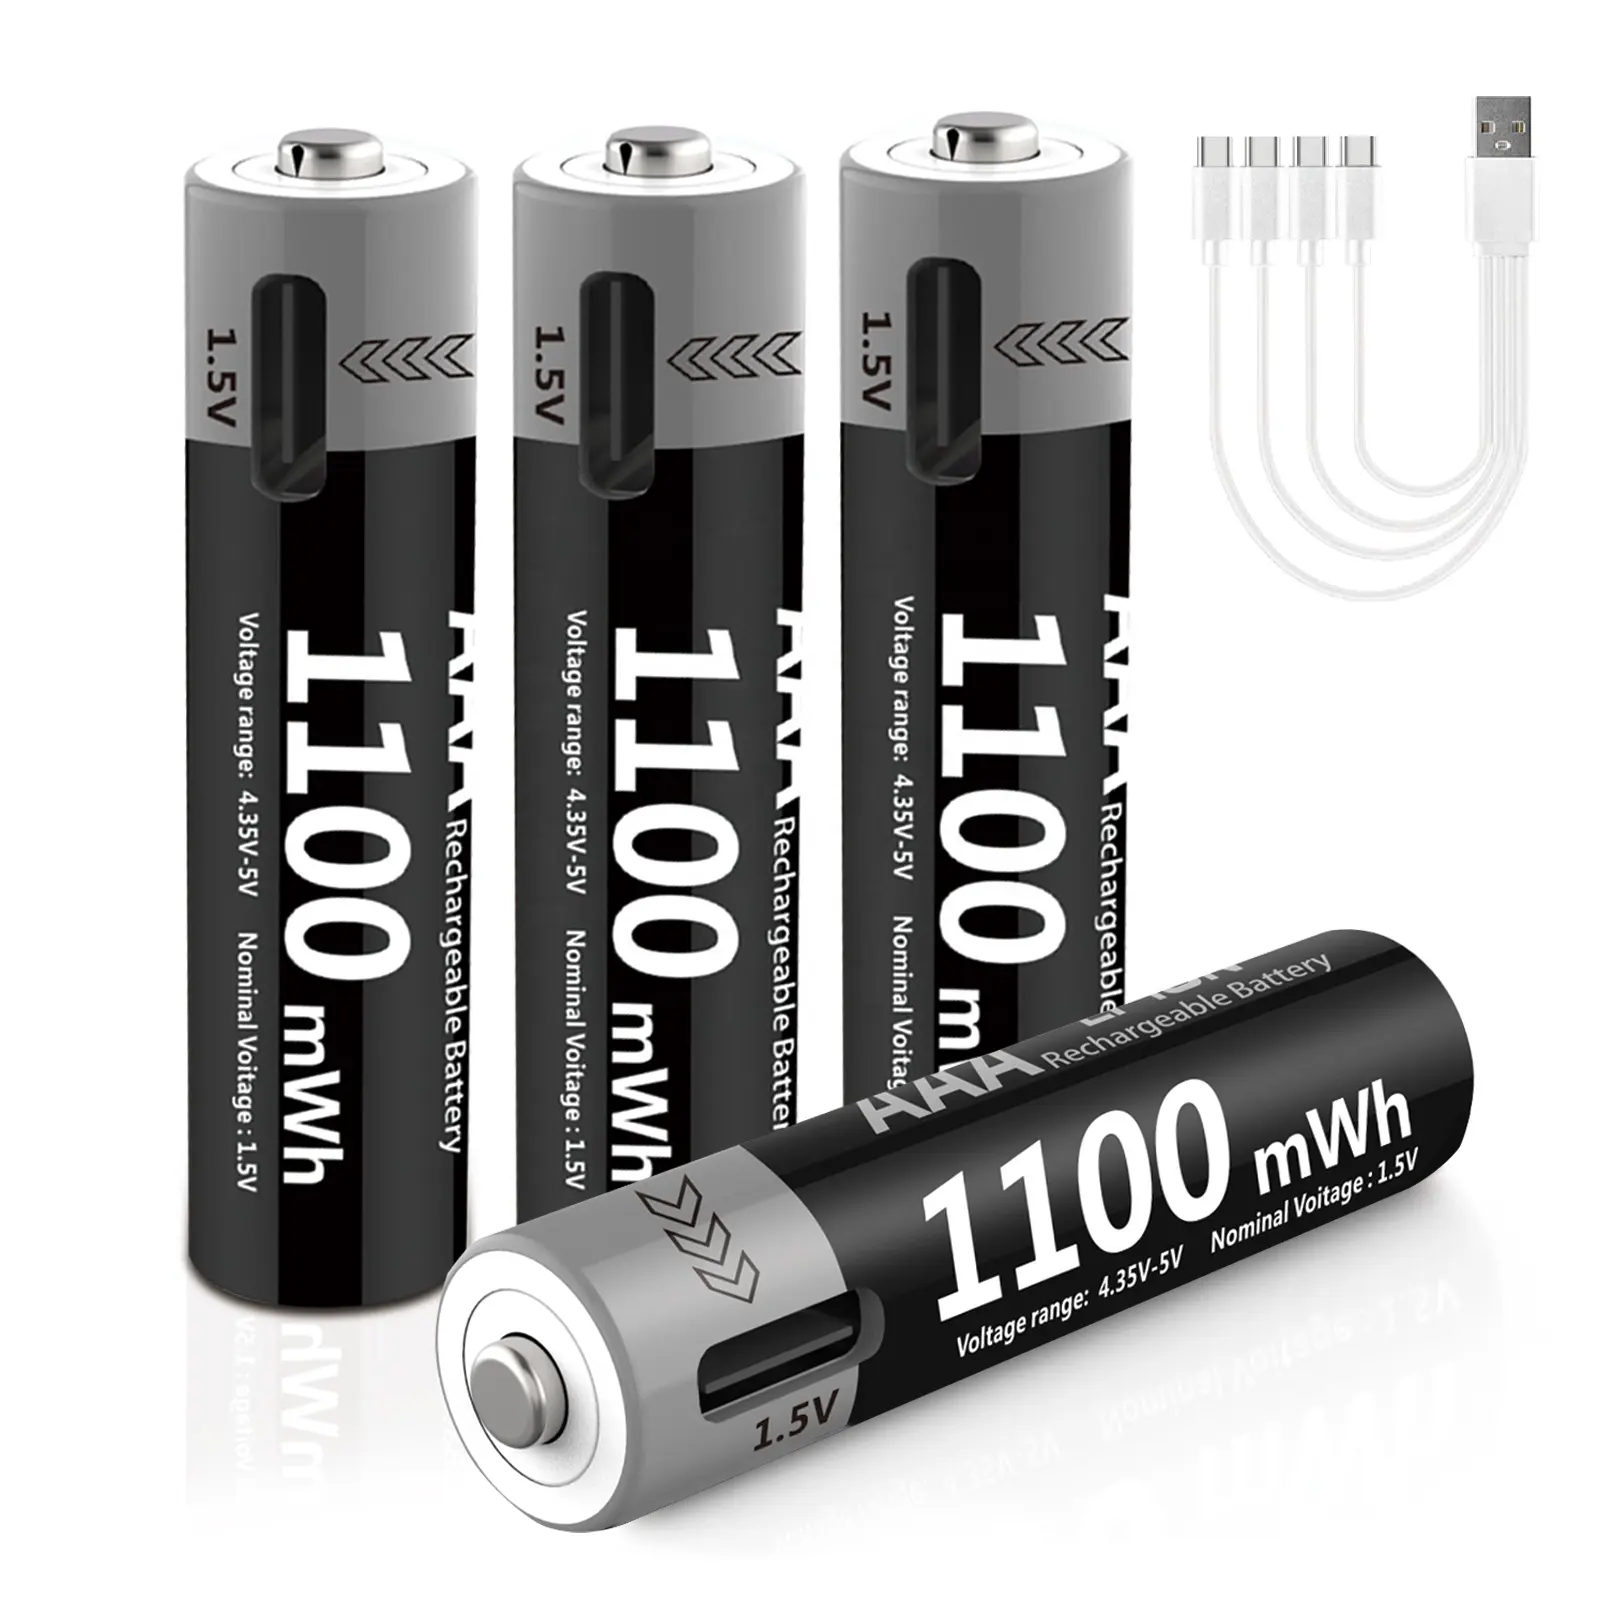 Bateria de íon de lítio AAA recarregável USB tipo C pequena portátil para uso doméstico com logotipo personalizado OEM 1100mWH